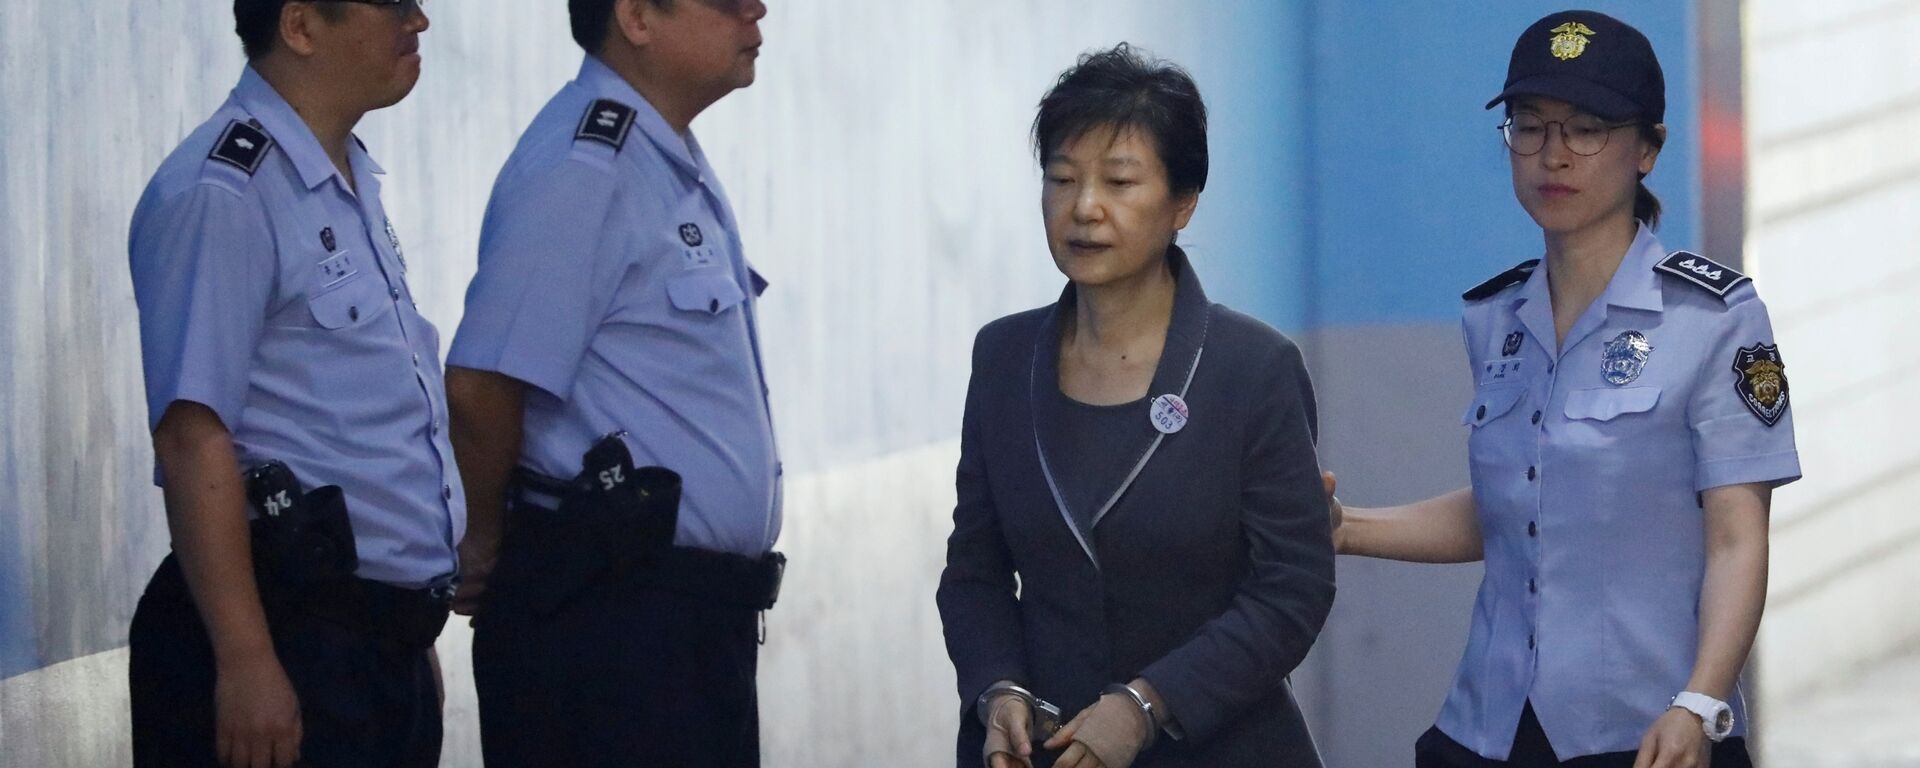 رئيسة كوريا الجنوبية السابقة بعد الحكم عليها بالسجن 24 عاما - سبوتنيك عربي, 1920, 07.04.2018